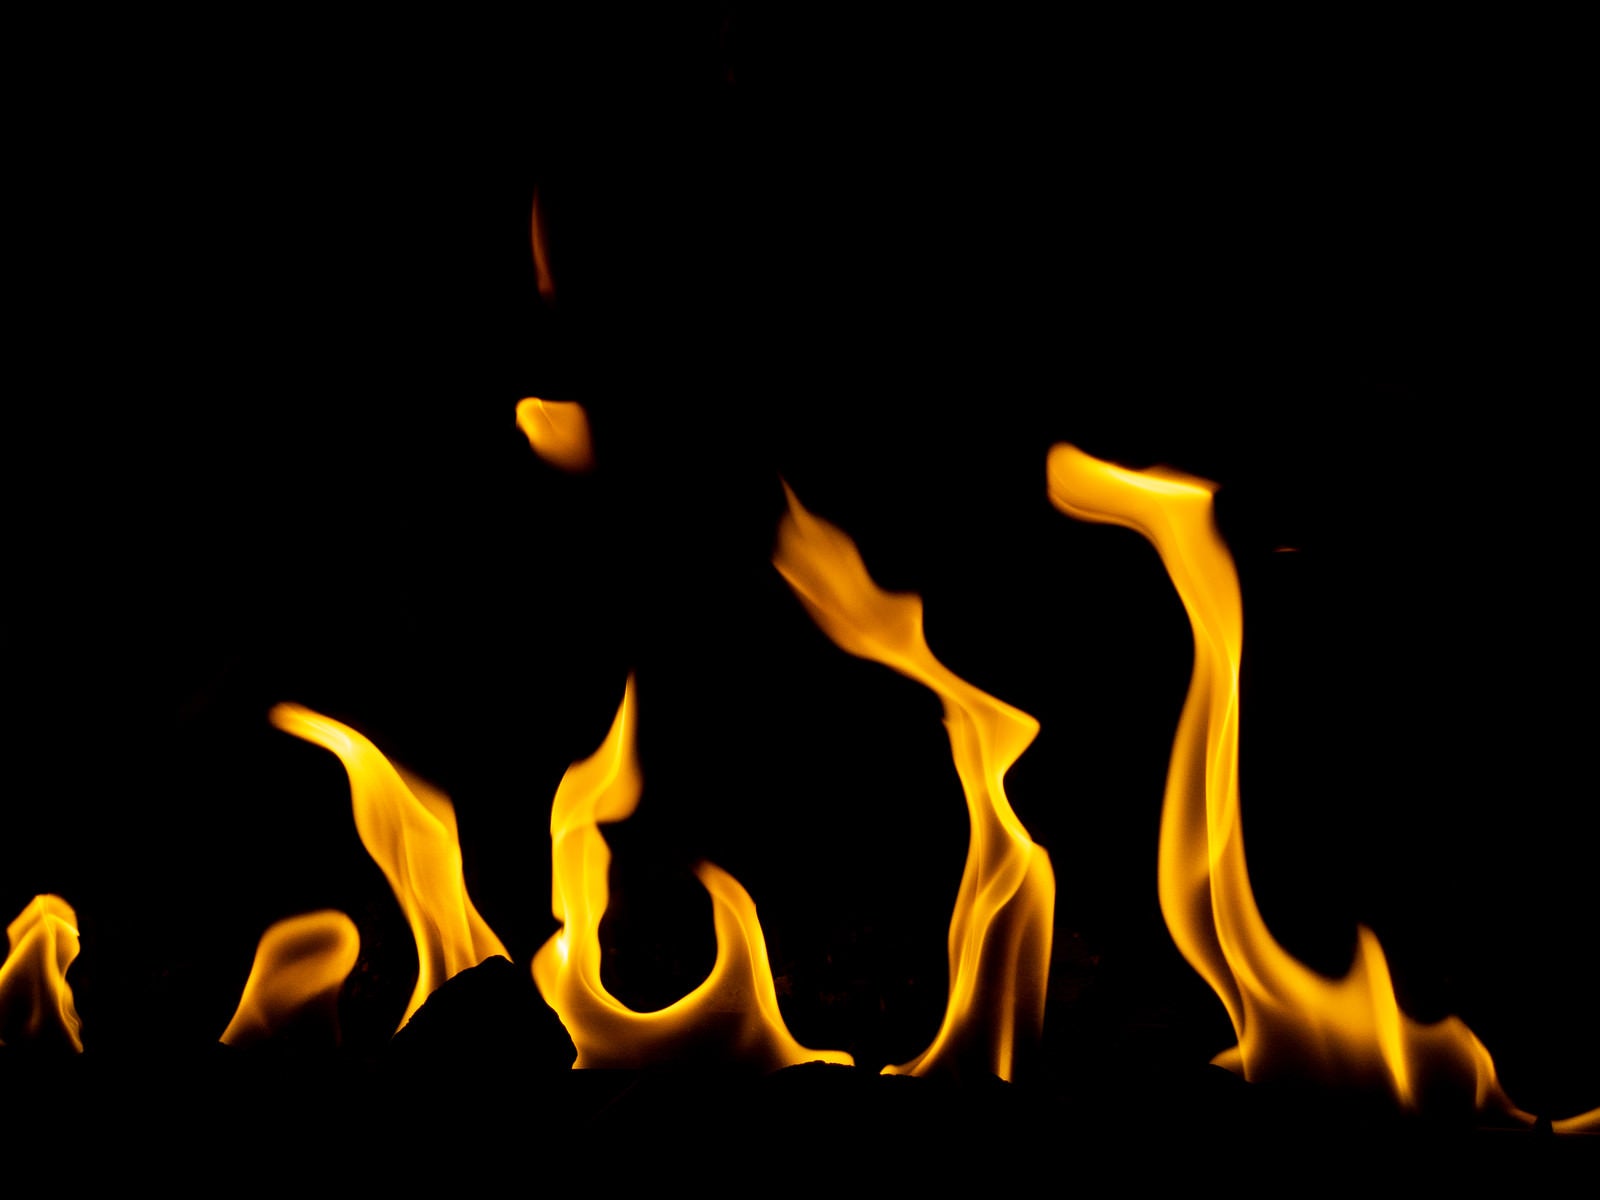 「メラメラ燃え続ける火」の写真